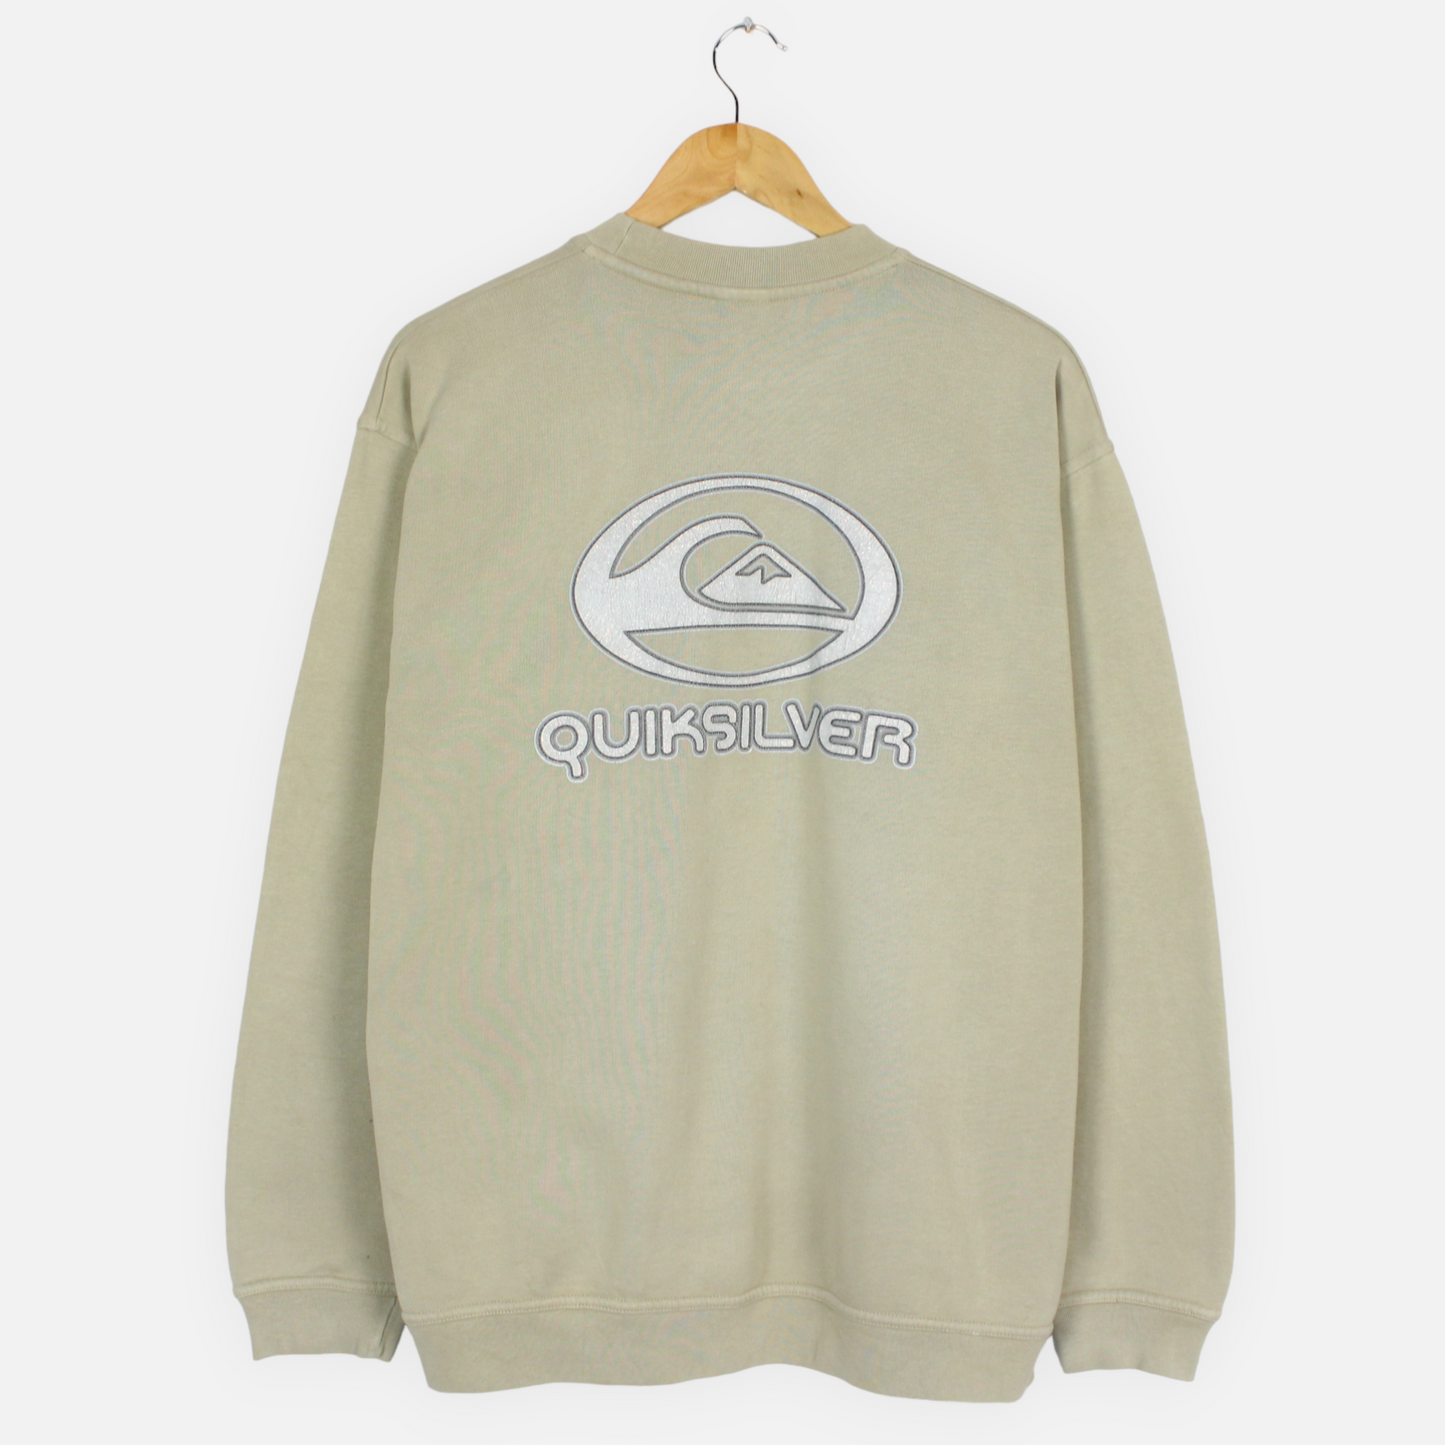 Vintage 90's Quiksilver Sweatshirt - M